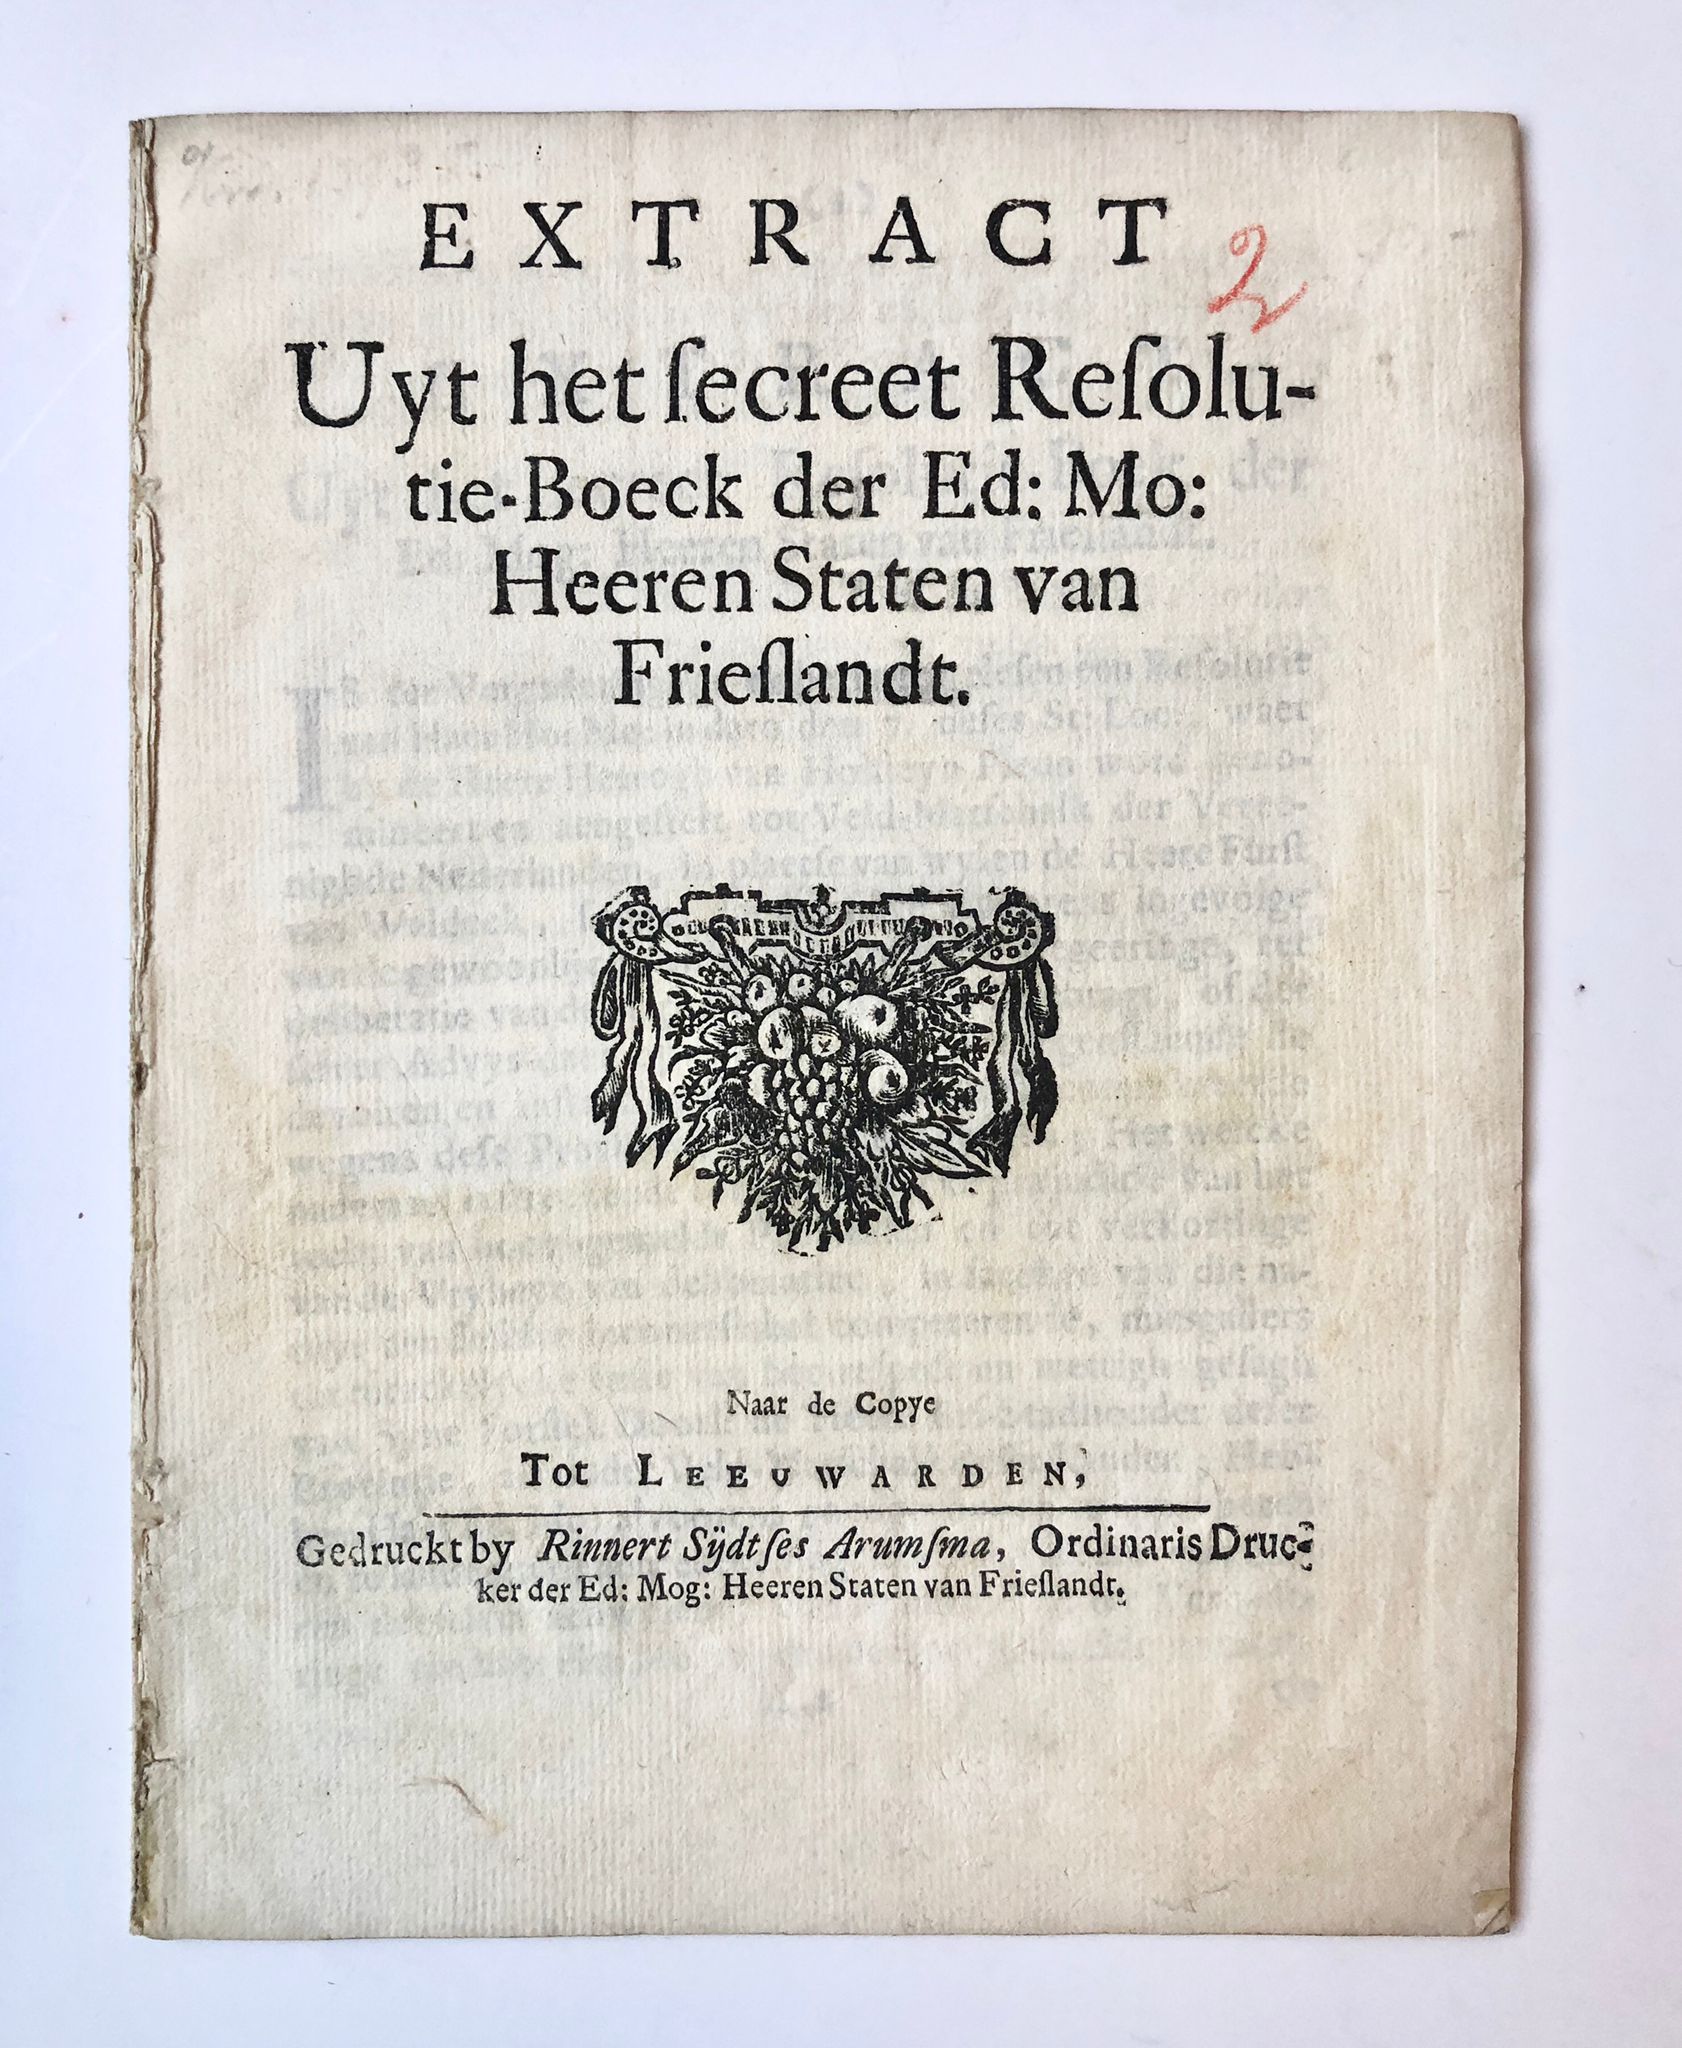 [Friesland, Leeuwarden, 1693] Extract uyt het secreet Resolutie-Boeck der Ed: Mo: Heeren Staten van Frieslandt, by Rinnert Sijdtses Arumsma, Tot Leeuwarden, 1693, 12 pp.